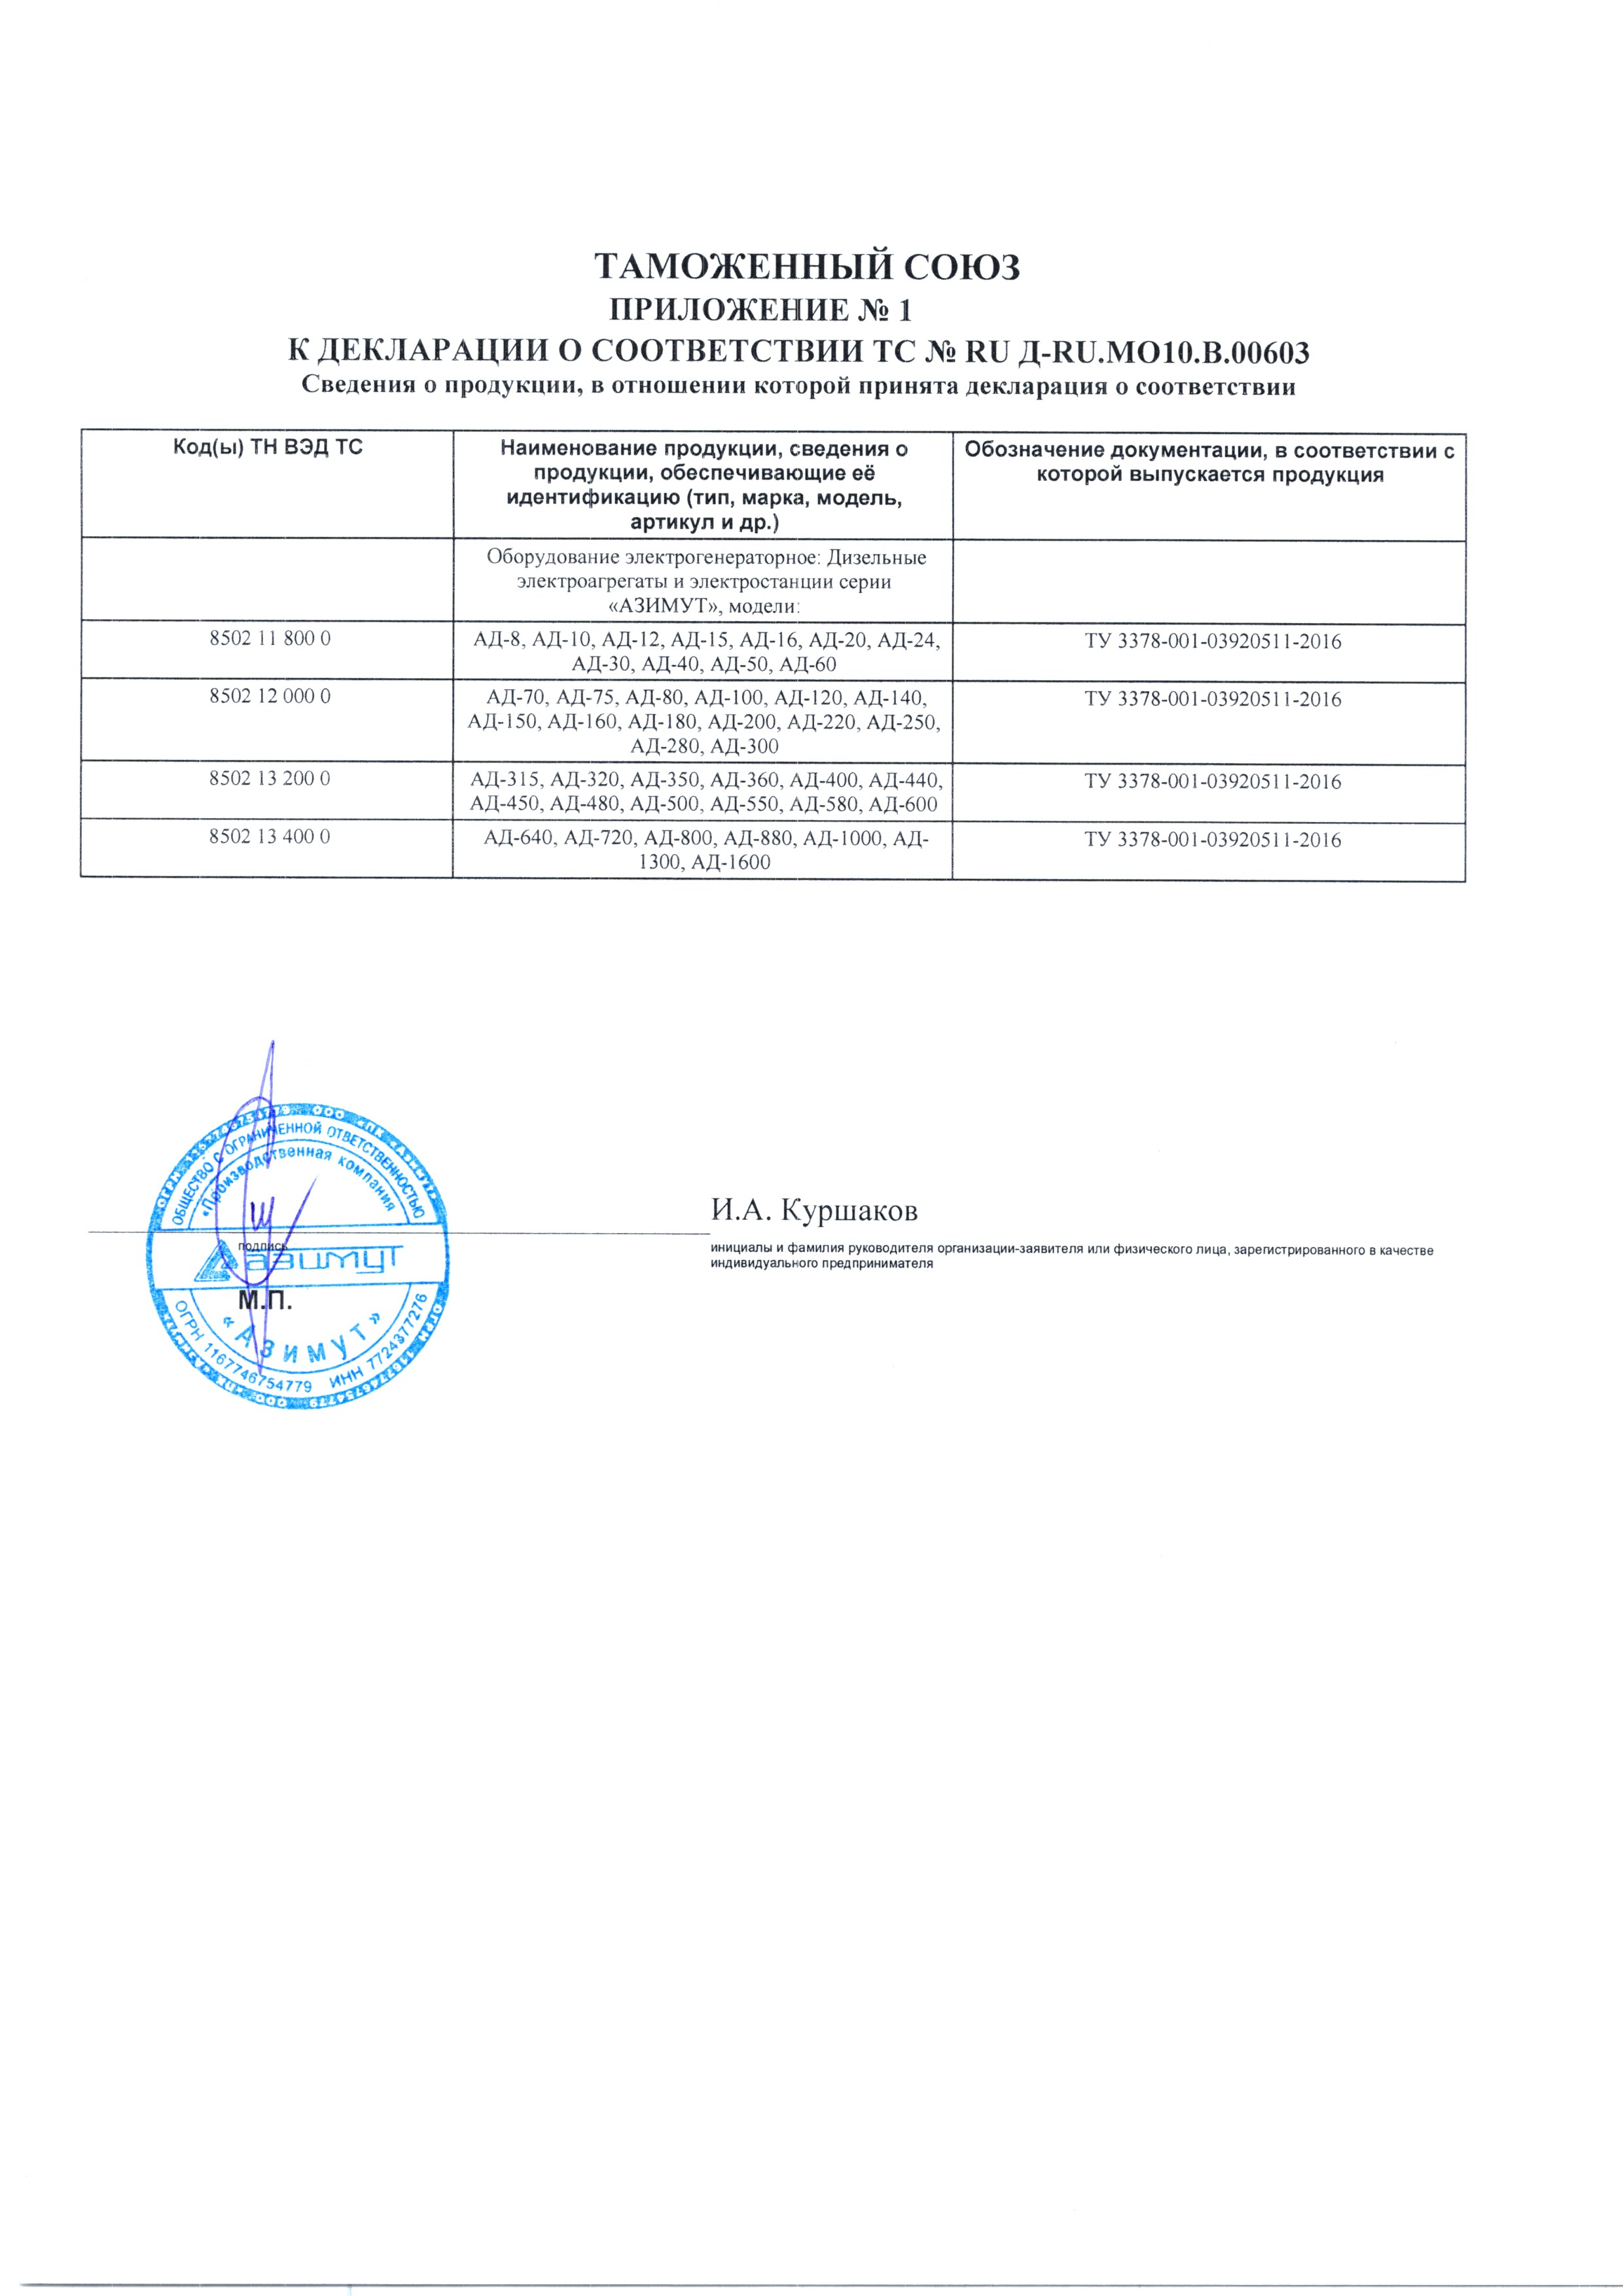 Сертификат на дизель генераторные установки Азимут